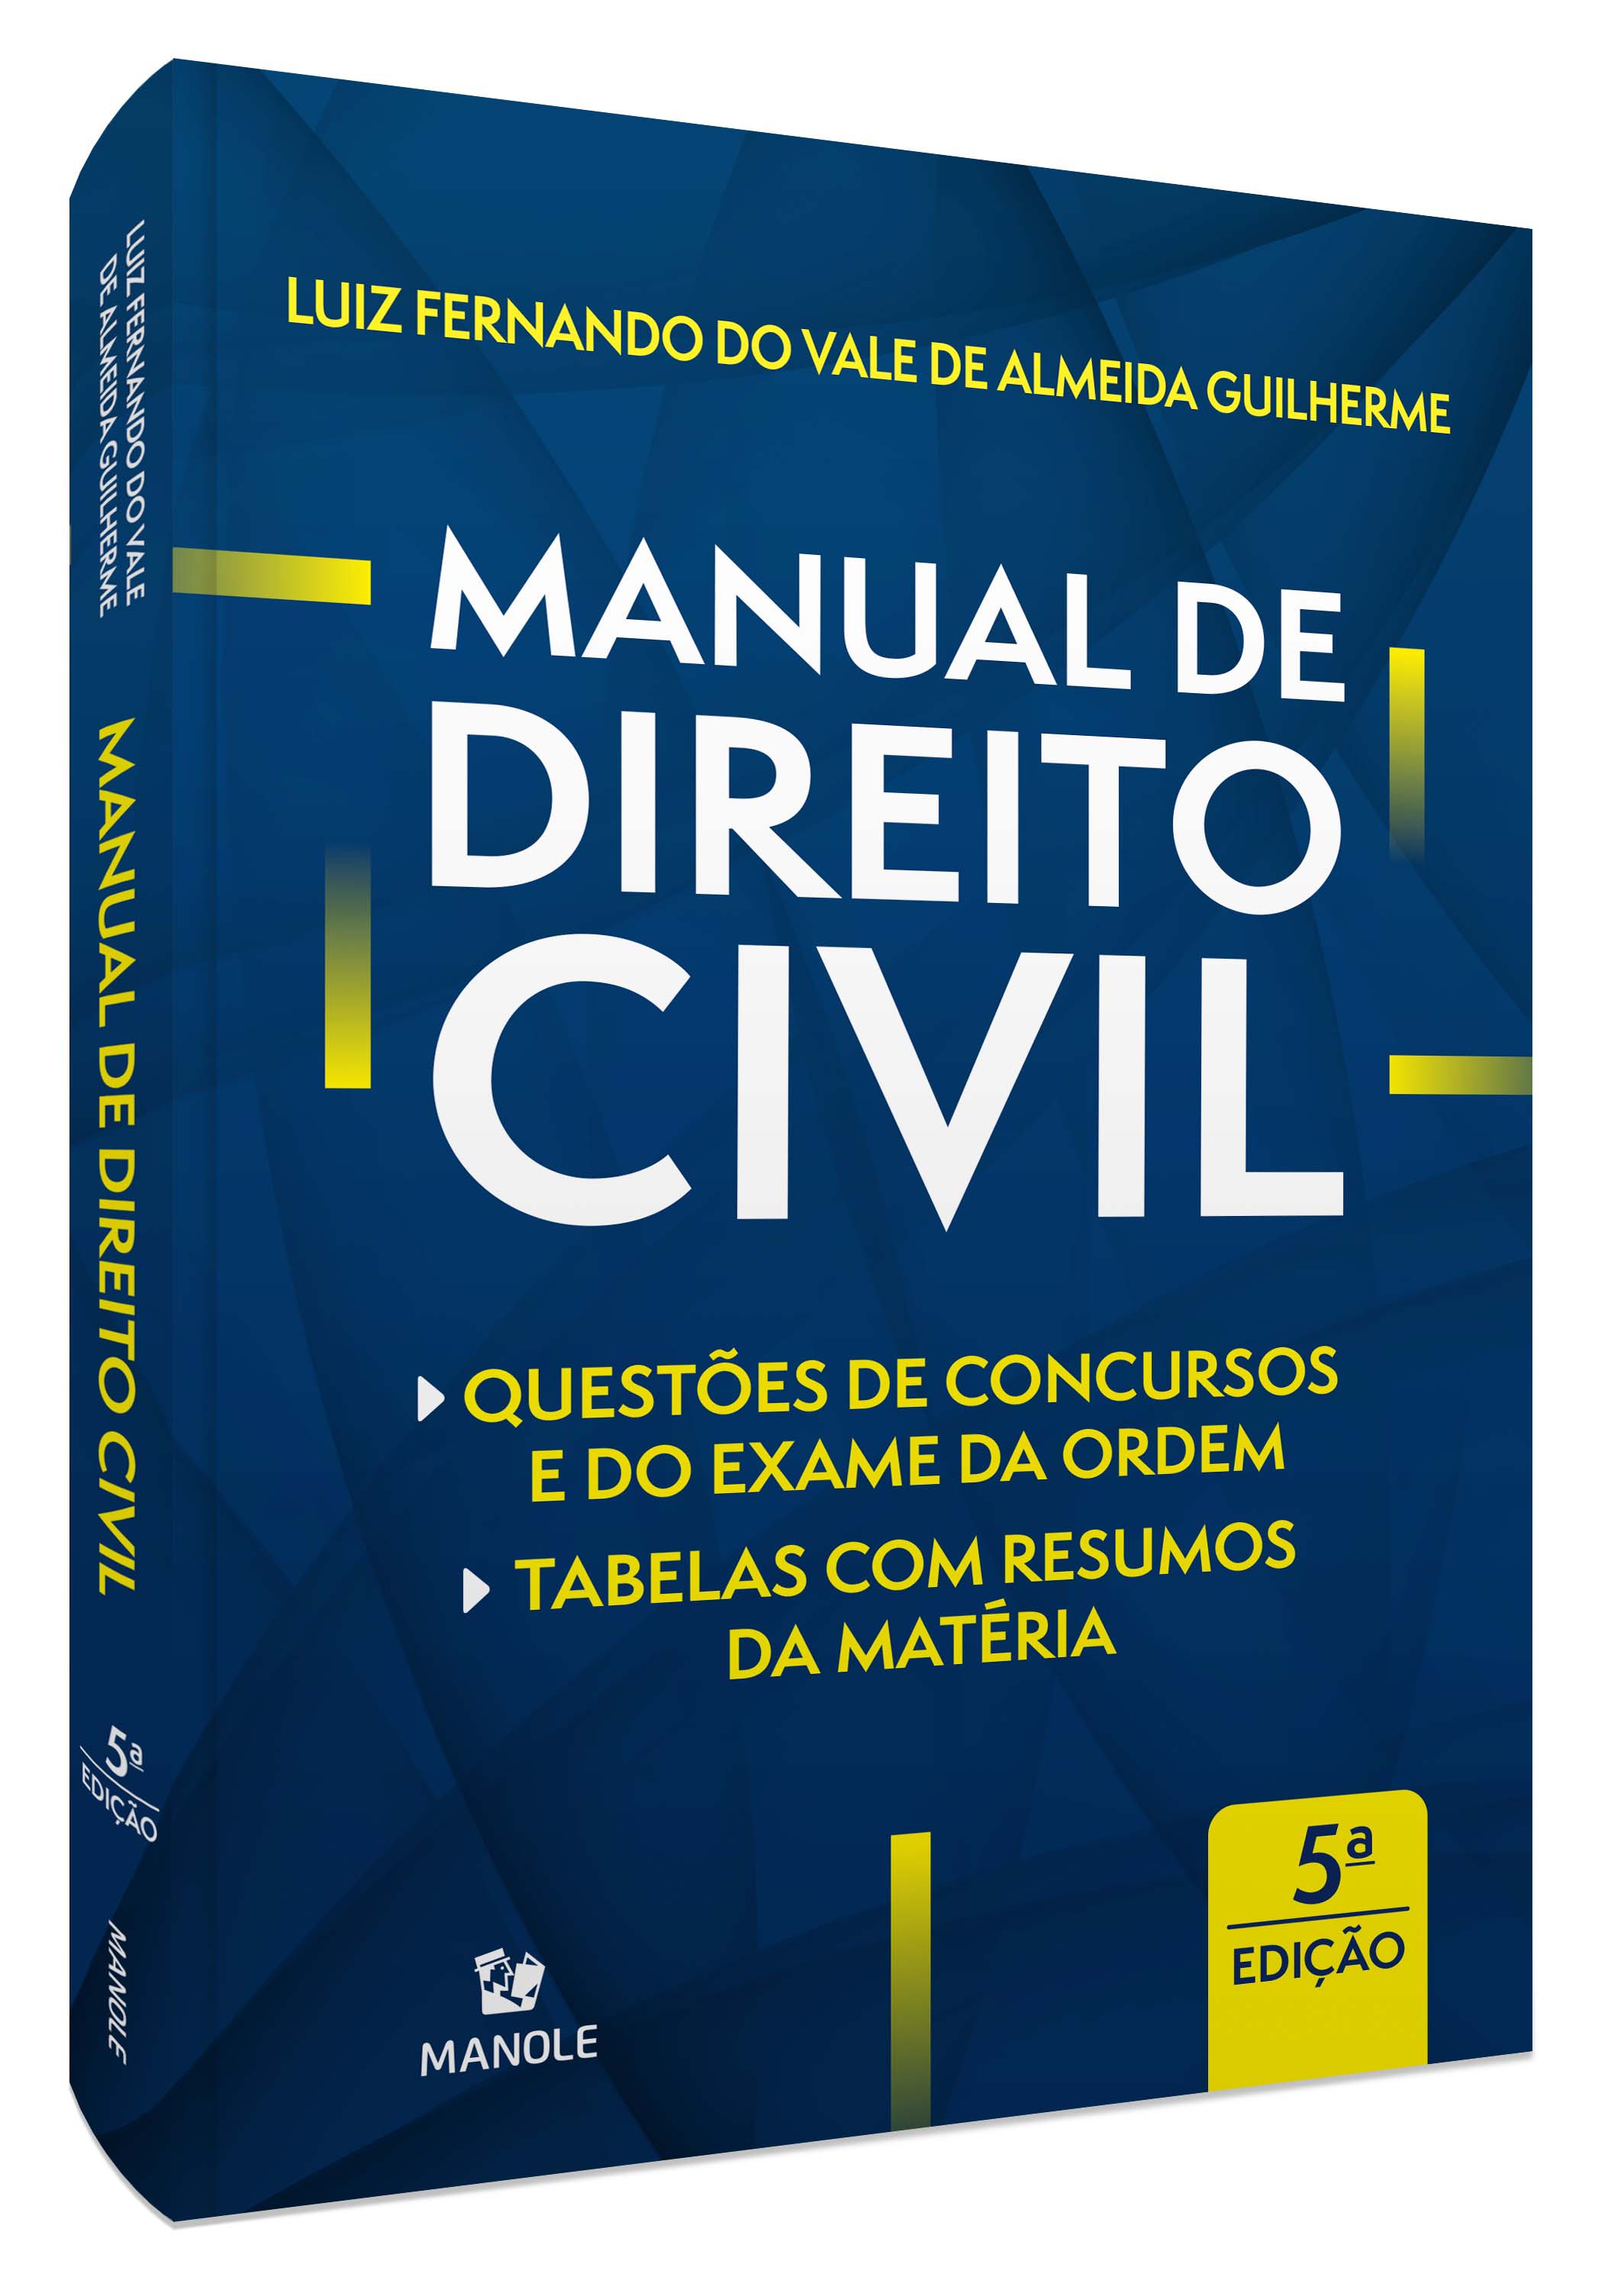 Manual De Direito Civil: Questões De Concursos e Da Ordem | Tabelas Com Resumos Da Máteria - 05Ed/22